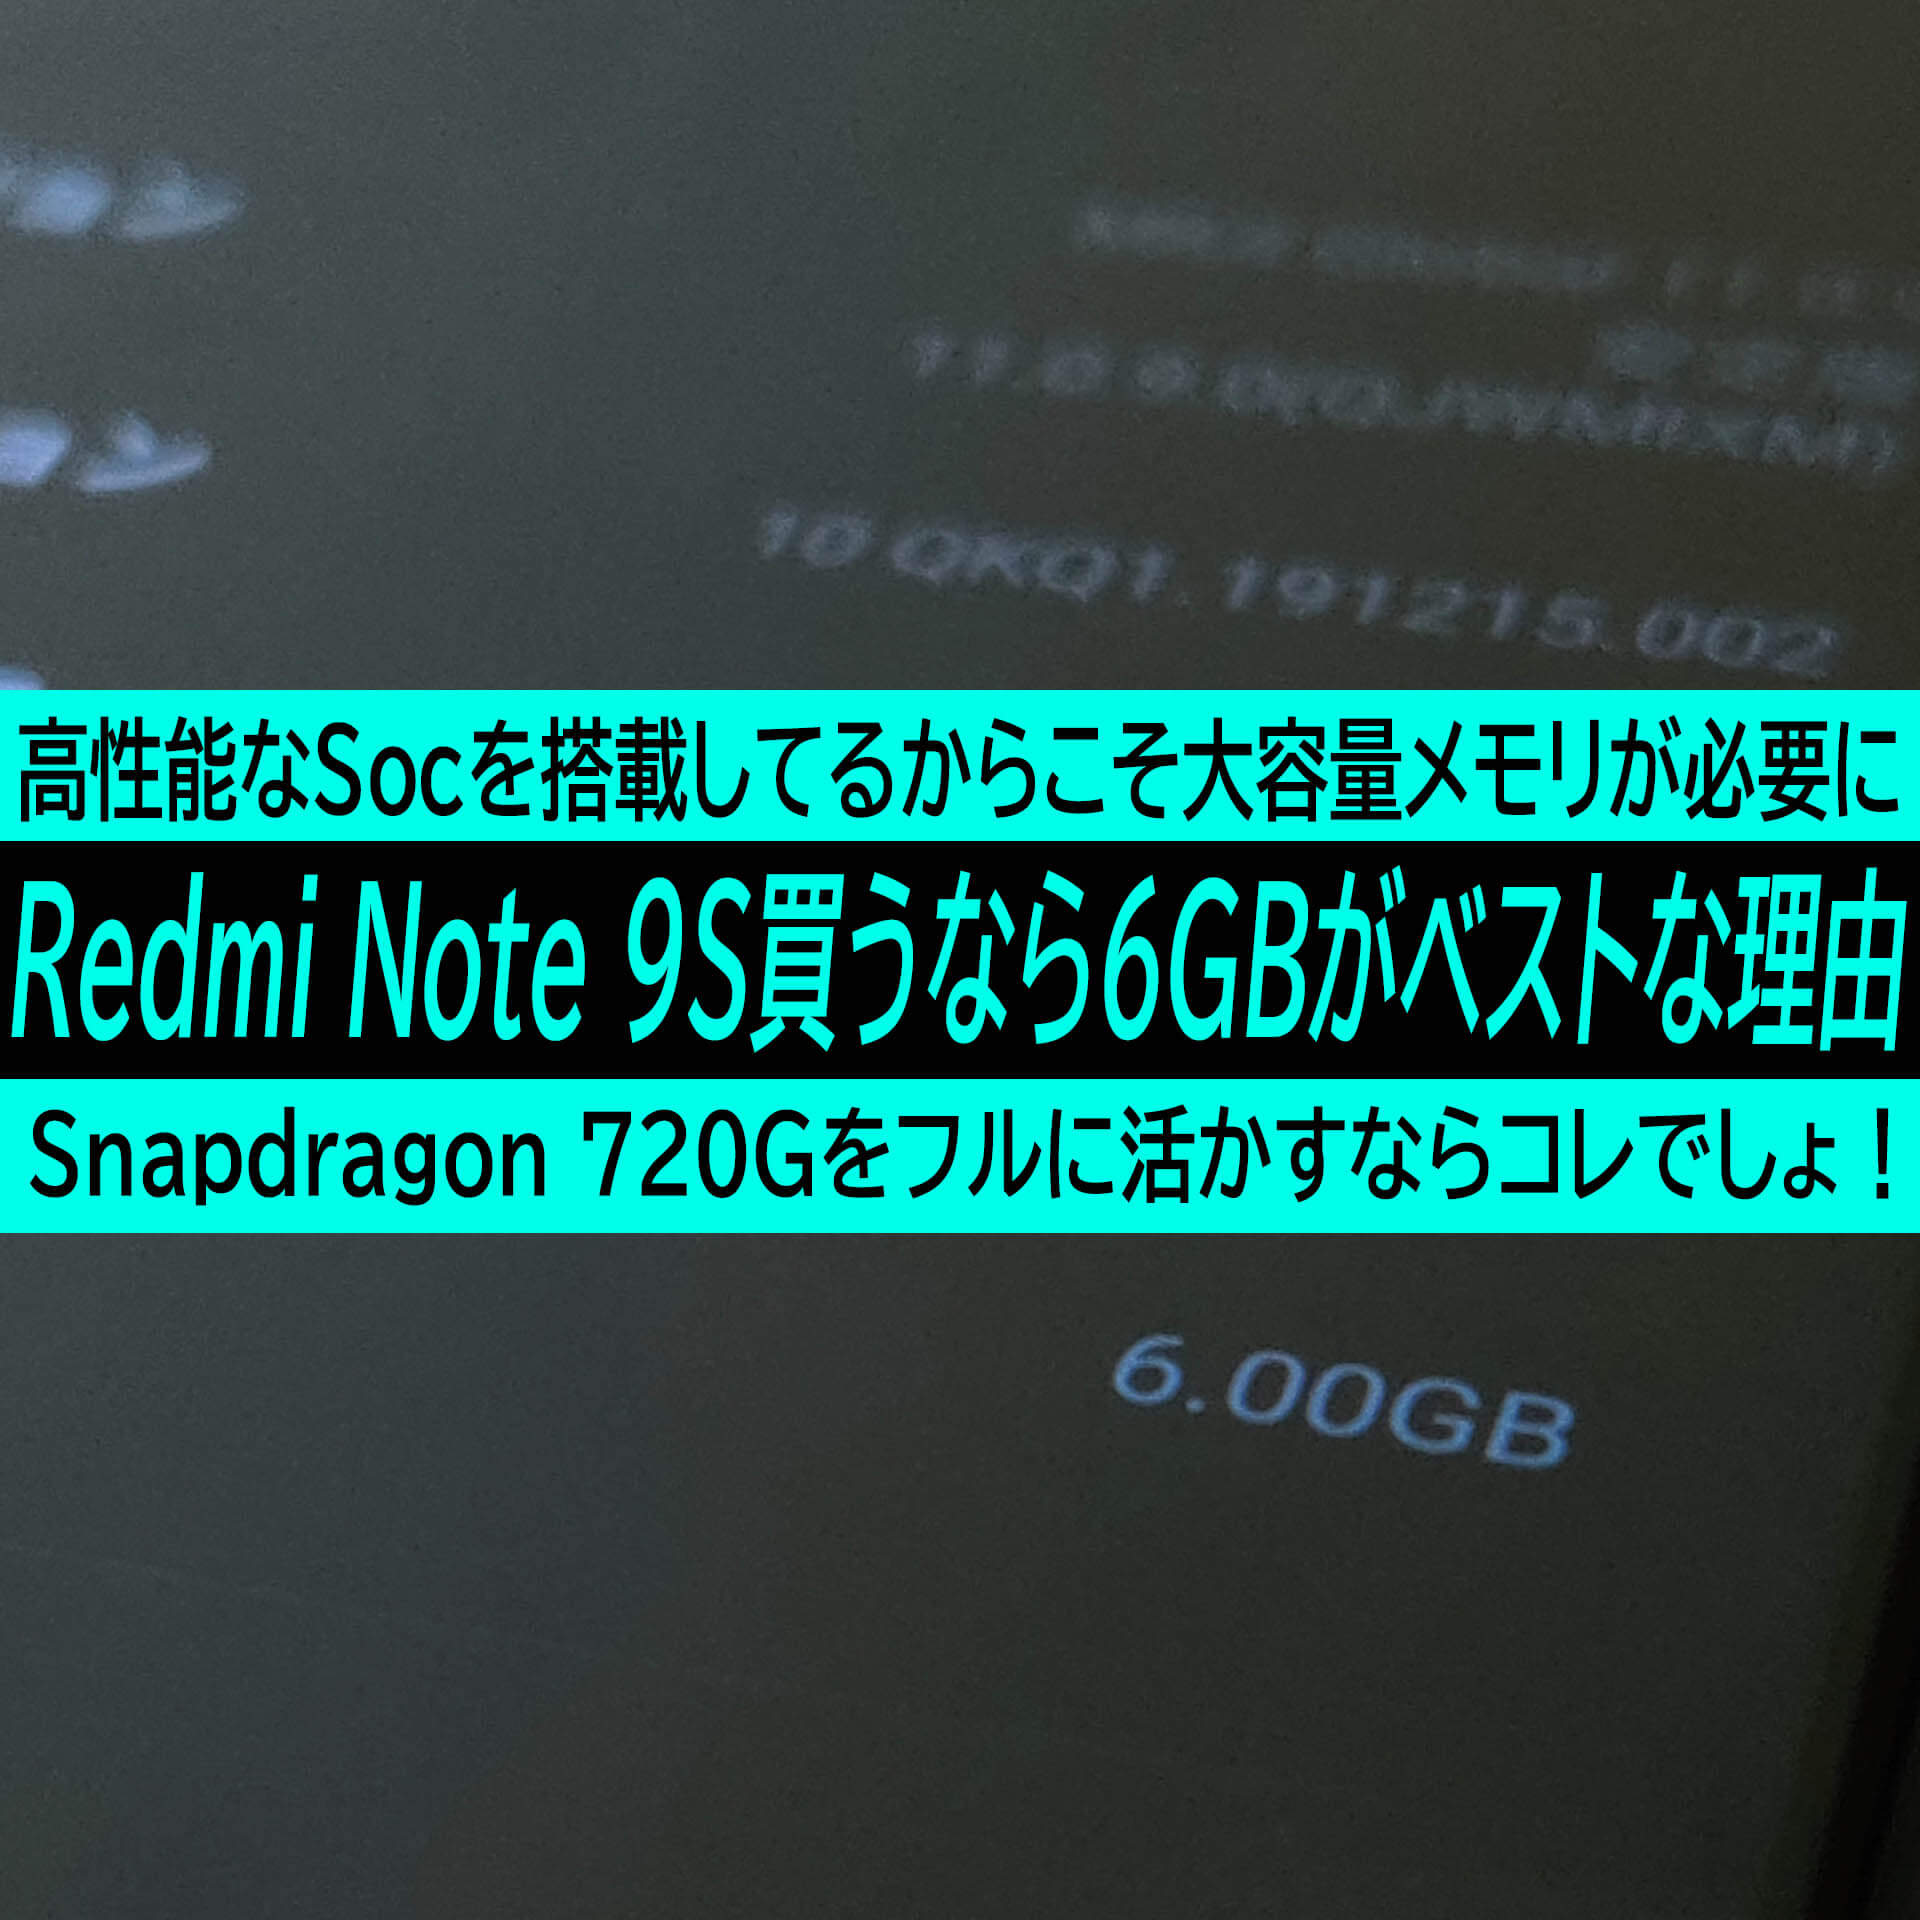 シャオミ Redmi Note 9sはsnapdragon 7g搭載だからこそ6gbモデルがベストコスパな理由